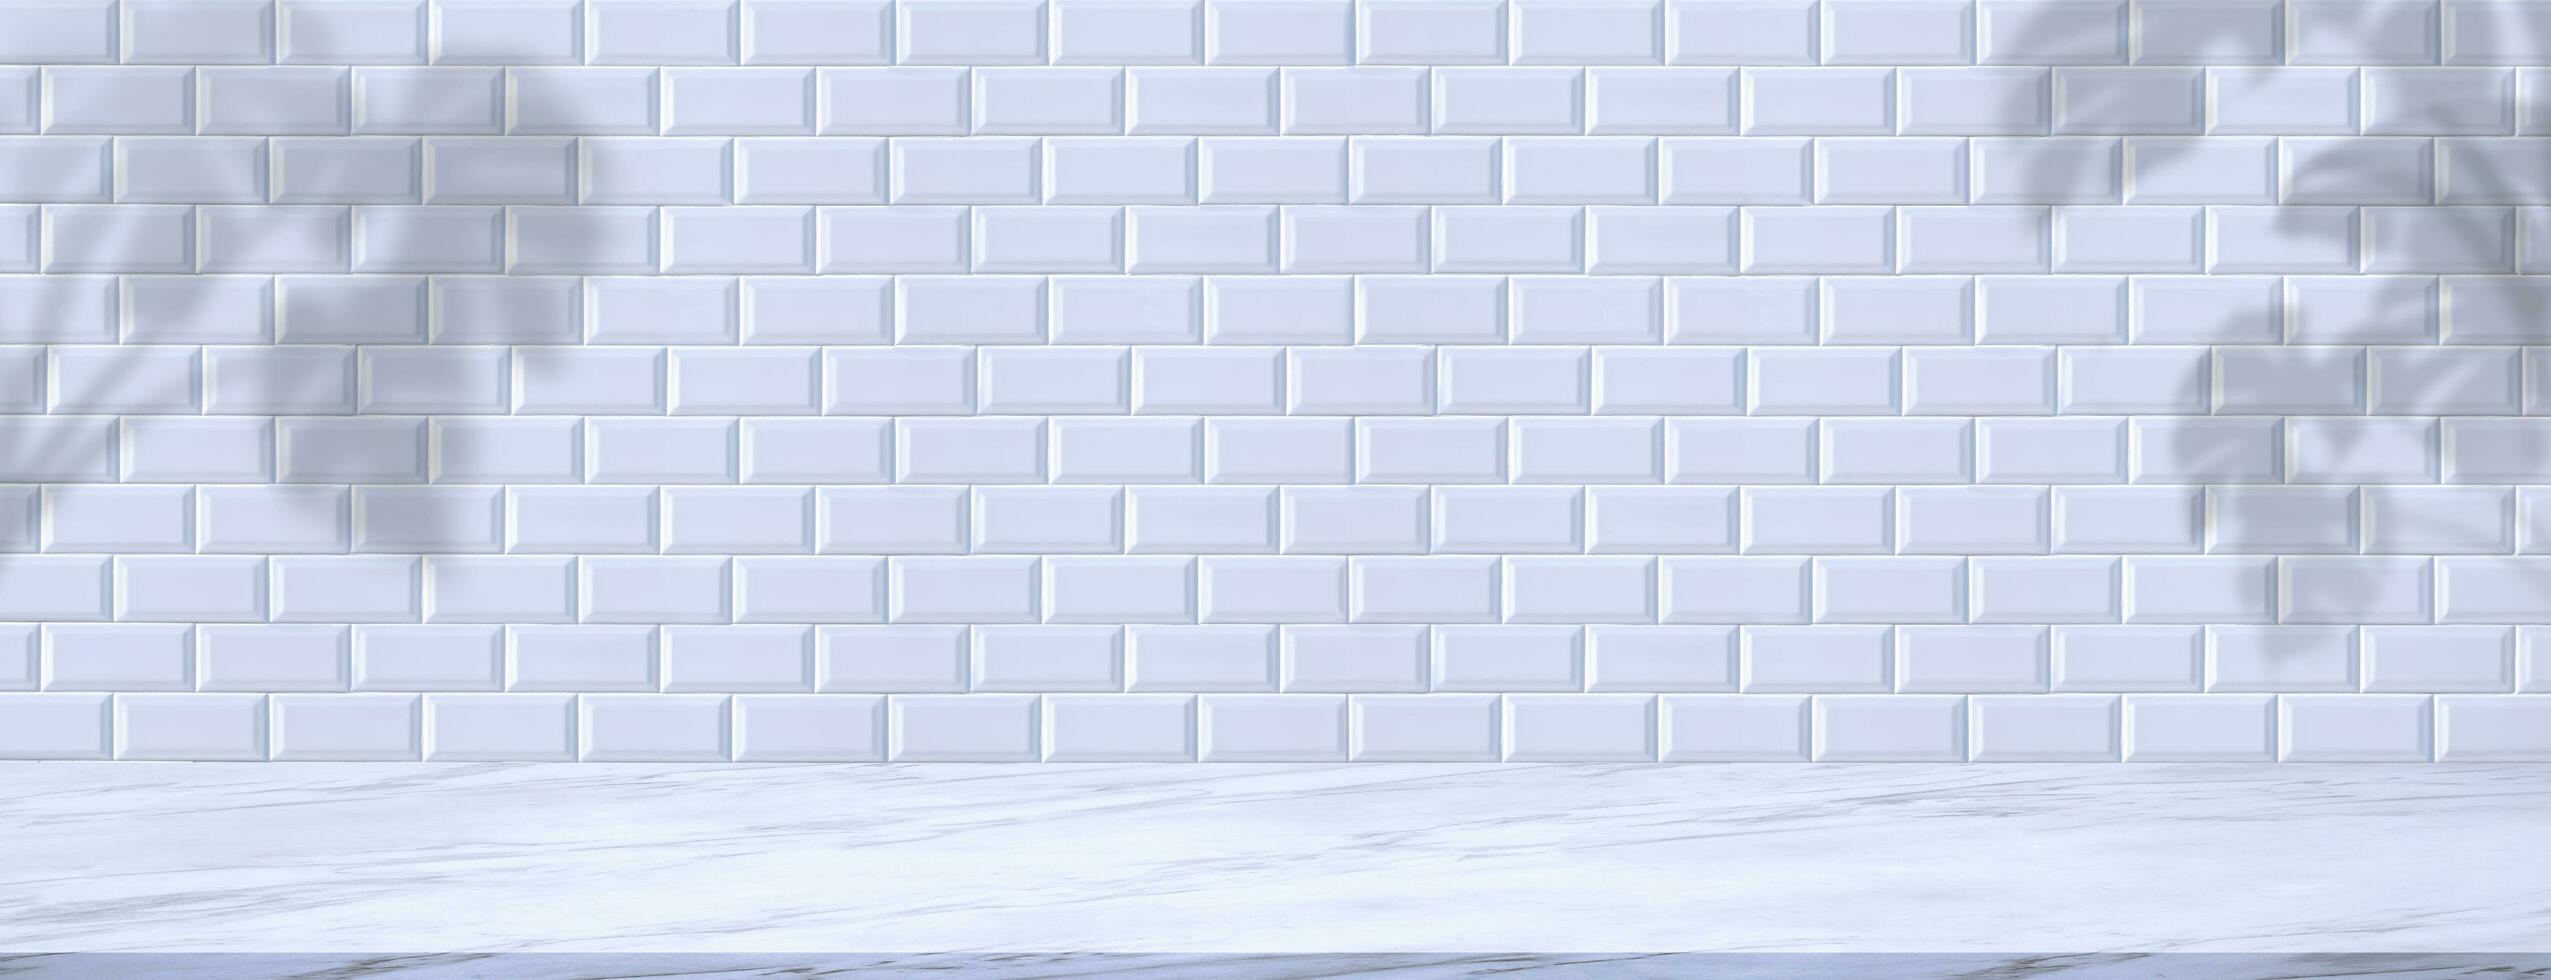 leeg wit marmeren teller met monstera fabriek schaduw Aan keramisch tegel muur in panoramisch visie, mockup banier achtergrond voor Product Scherm en tekst Cadeau Aan vrij ruimte backdrop foto